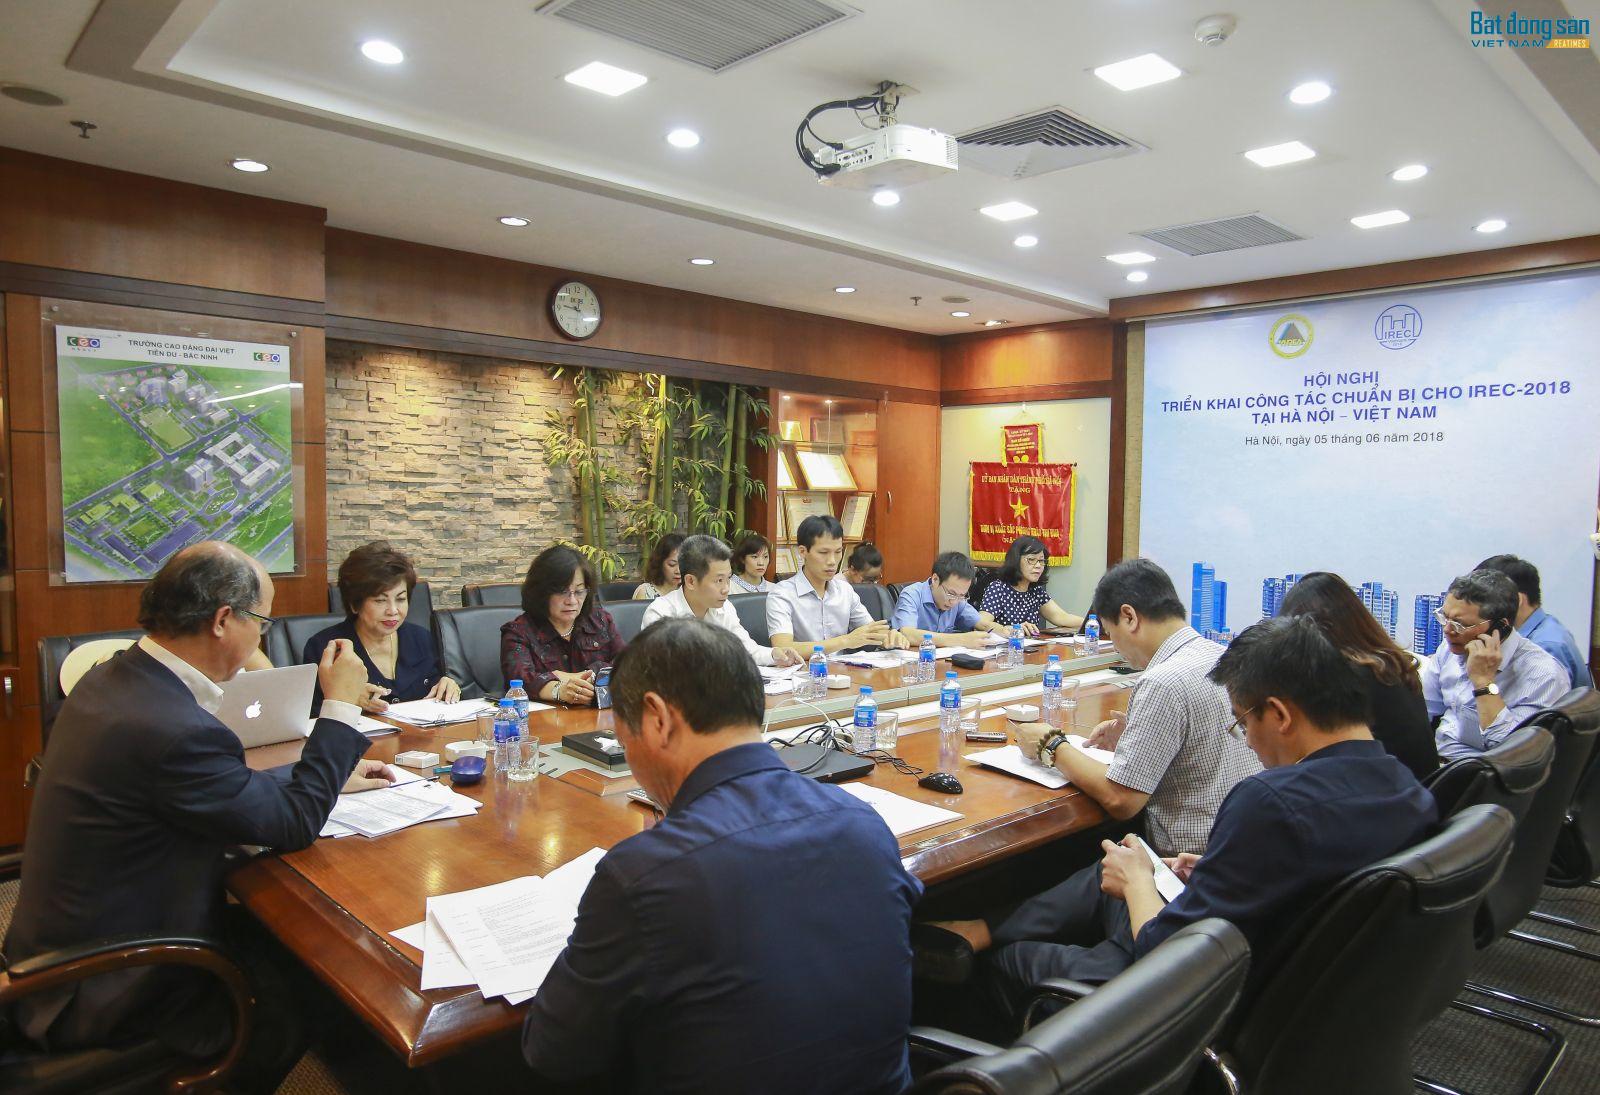 Quang cảnh Hội nghị triển khai công tác chuẩn bị cho IREC 2018 tại Hà Nội.